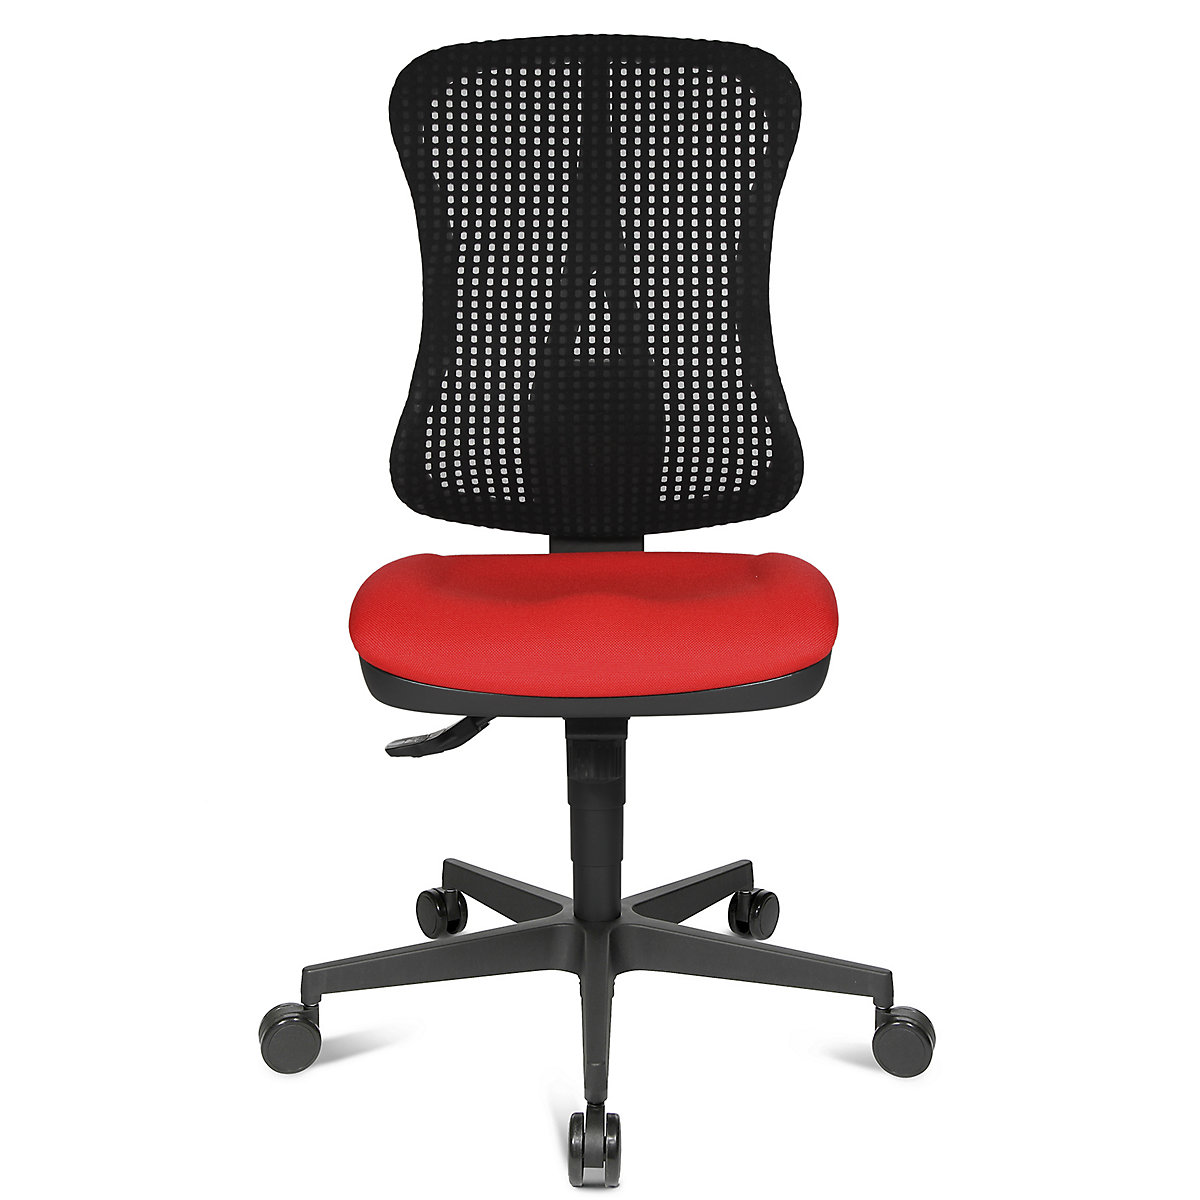 Silla giratoria ergonómica con asiento moldeado – Topstar, sin brazos, asiento rojo, retícula del respaldo negra-9